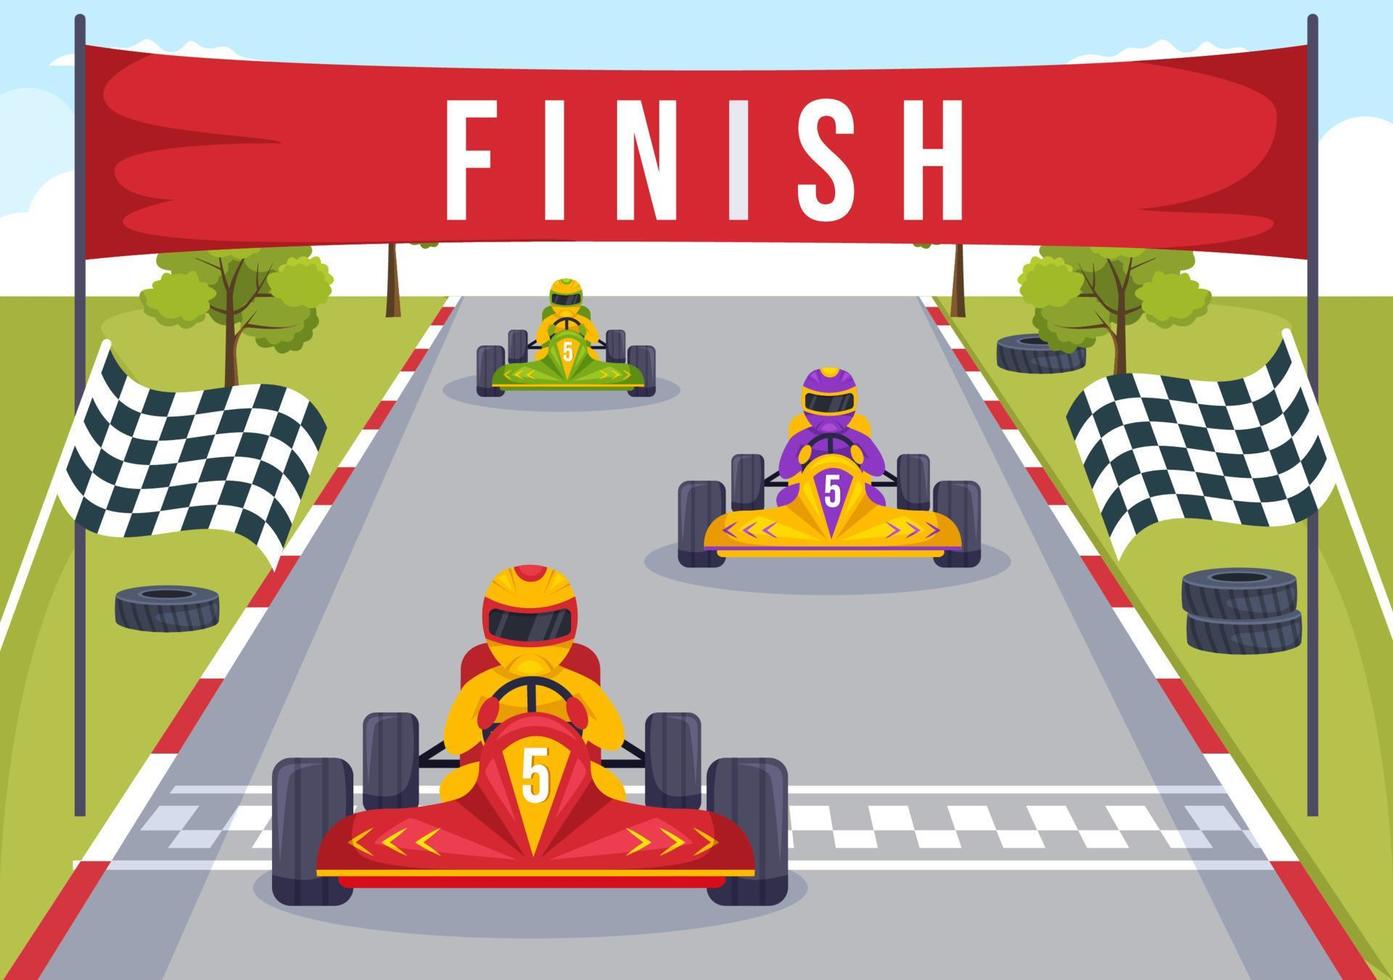 esporte de kart com jogo de corrida go kart ou mini carro em pequena pista de circuito em ilustração de modelo desenhado à mão de desenho animado plano vetor